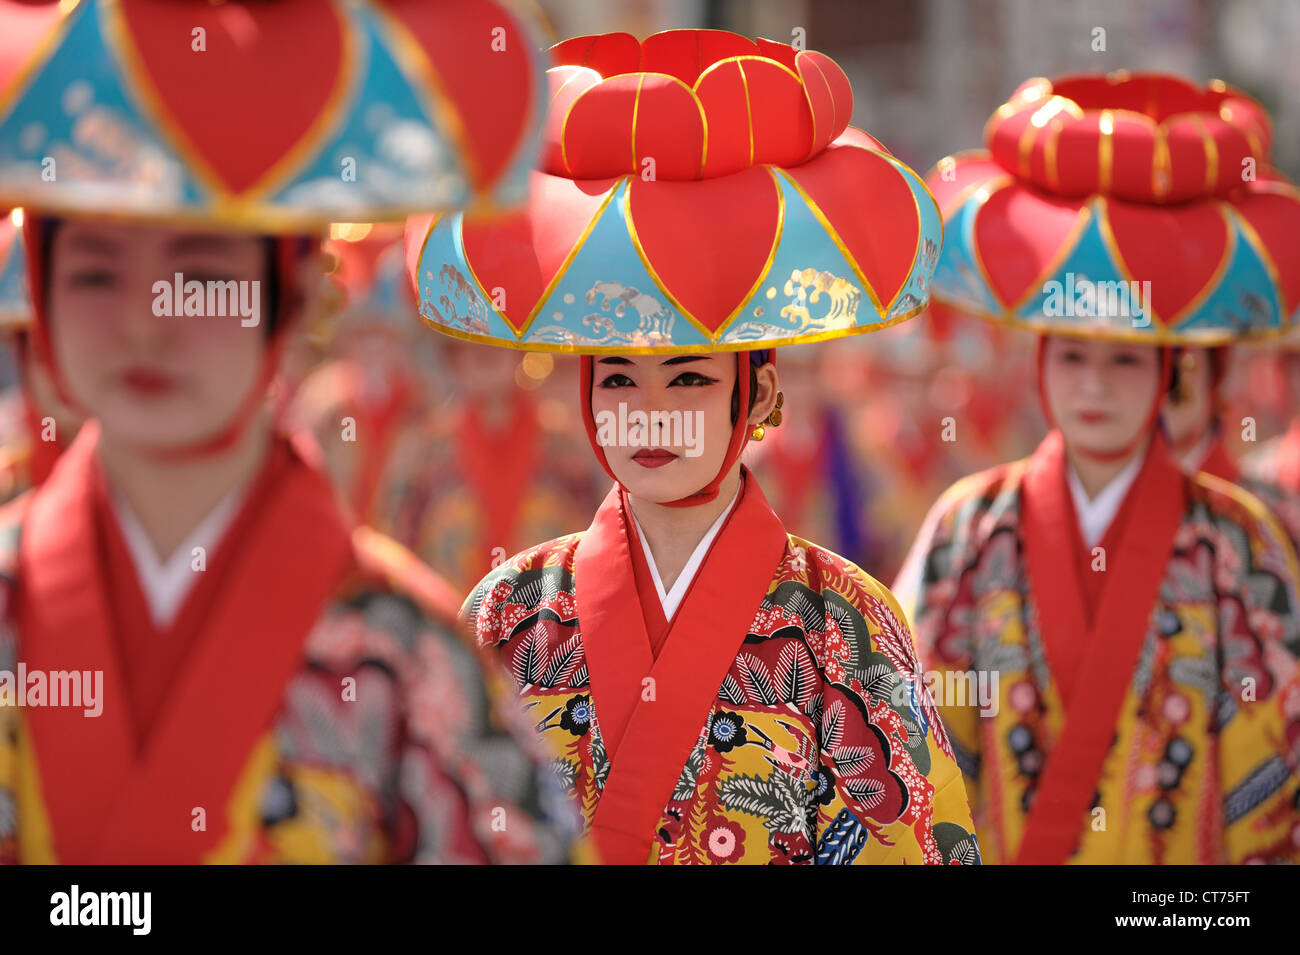 Los artistas de danza tradicional se dirigen a la siguiente ubicación durante un festival local en Okinawa, Japón. Foto de stock